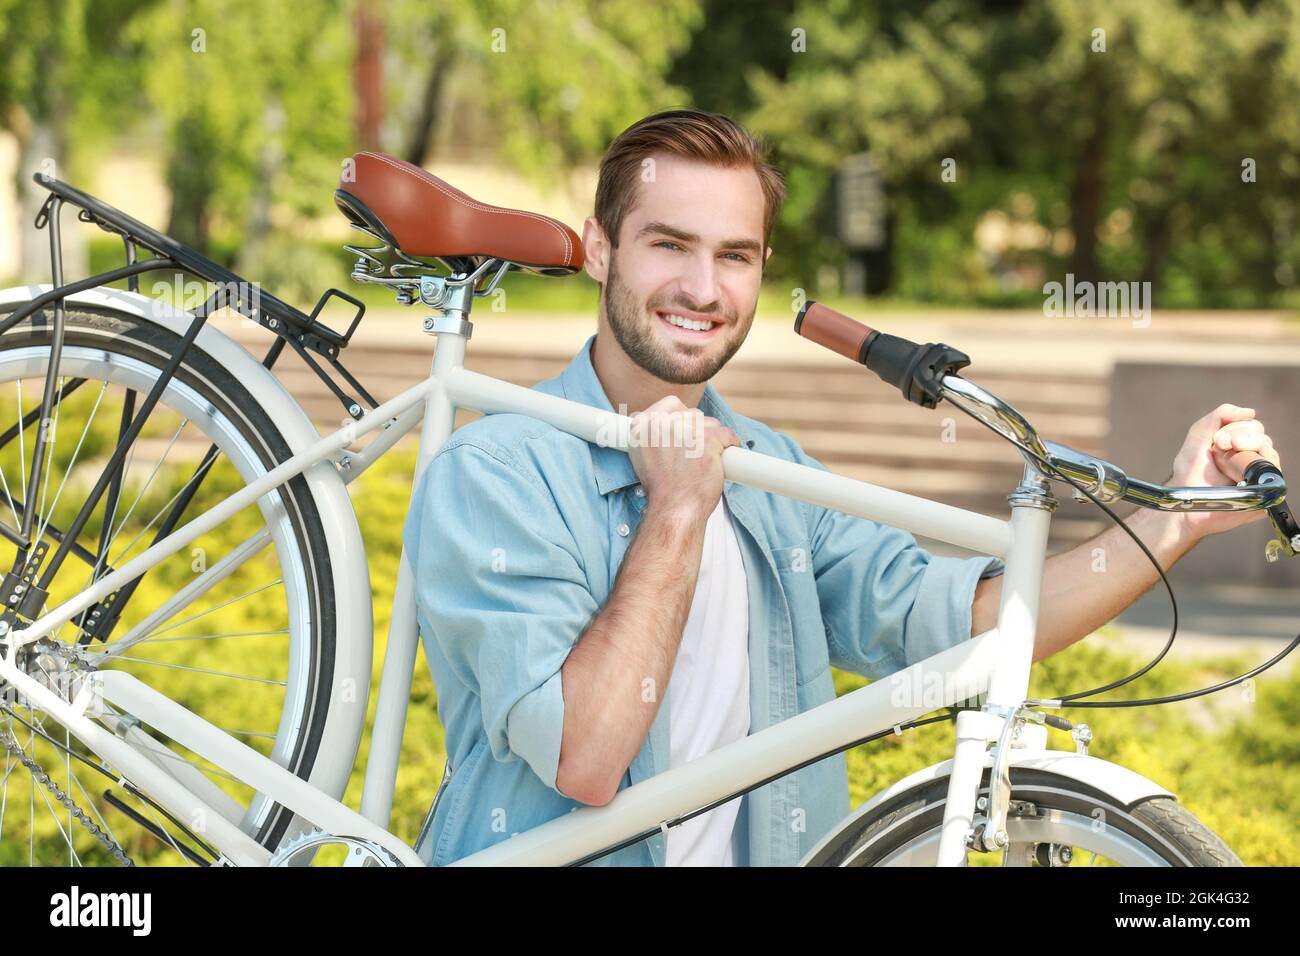 Schöner junger Mann mit Fahrrad im Freien Stockfotografie - Alamy